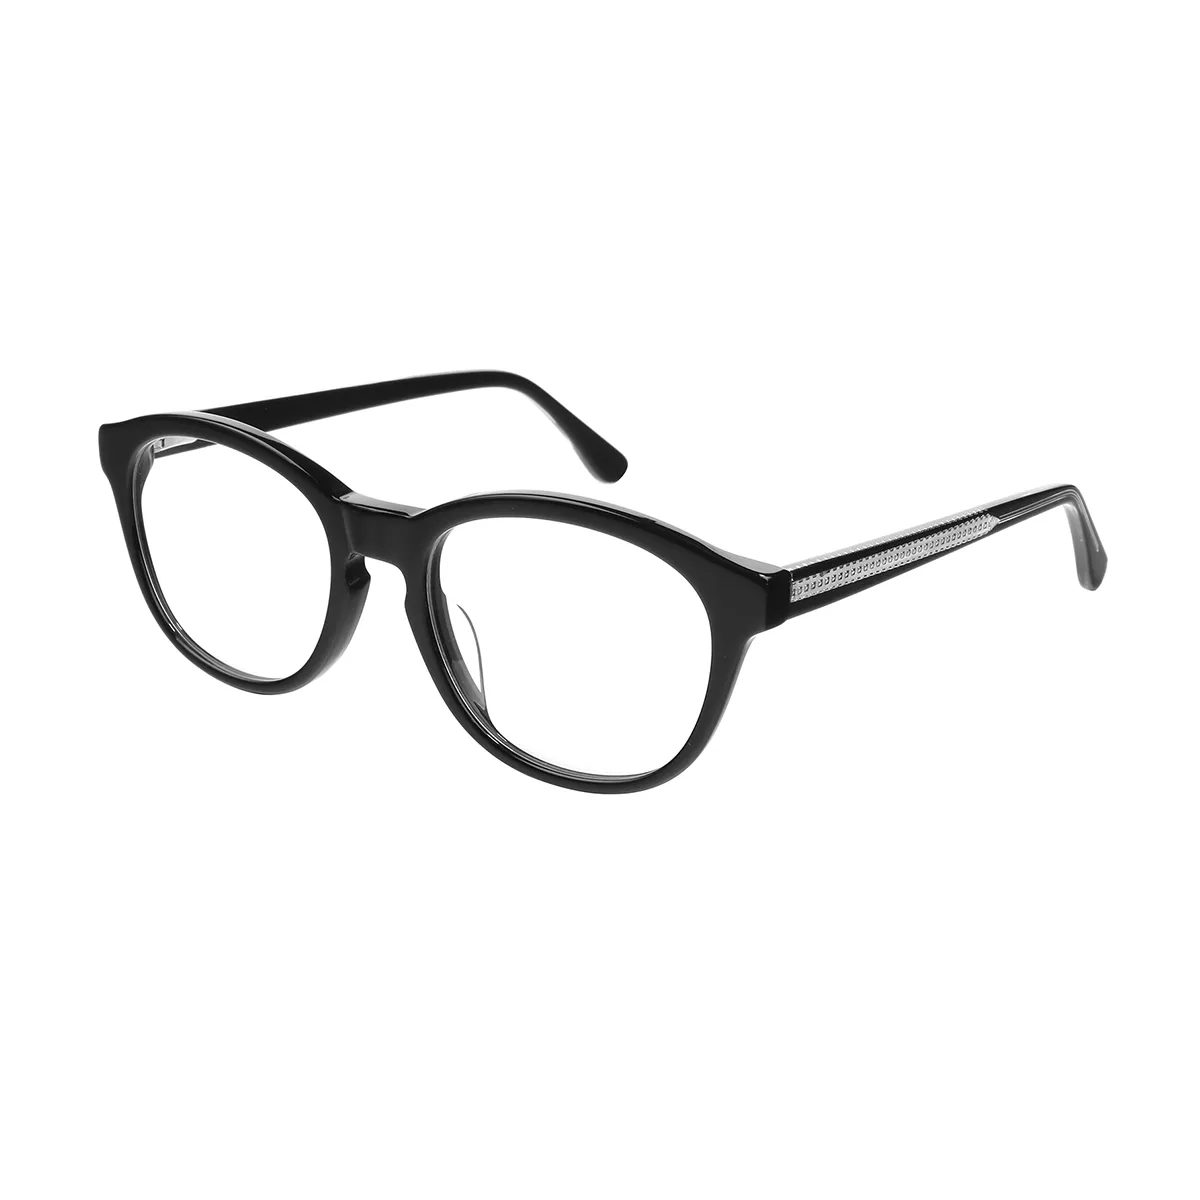 Classic Oval Demi Eyeglasses for Women & Men